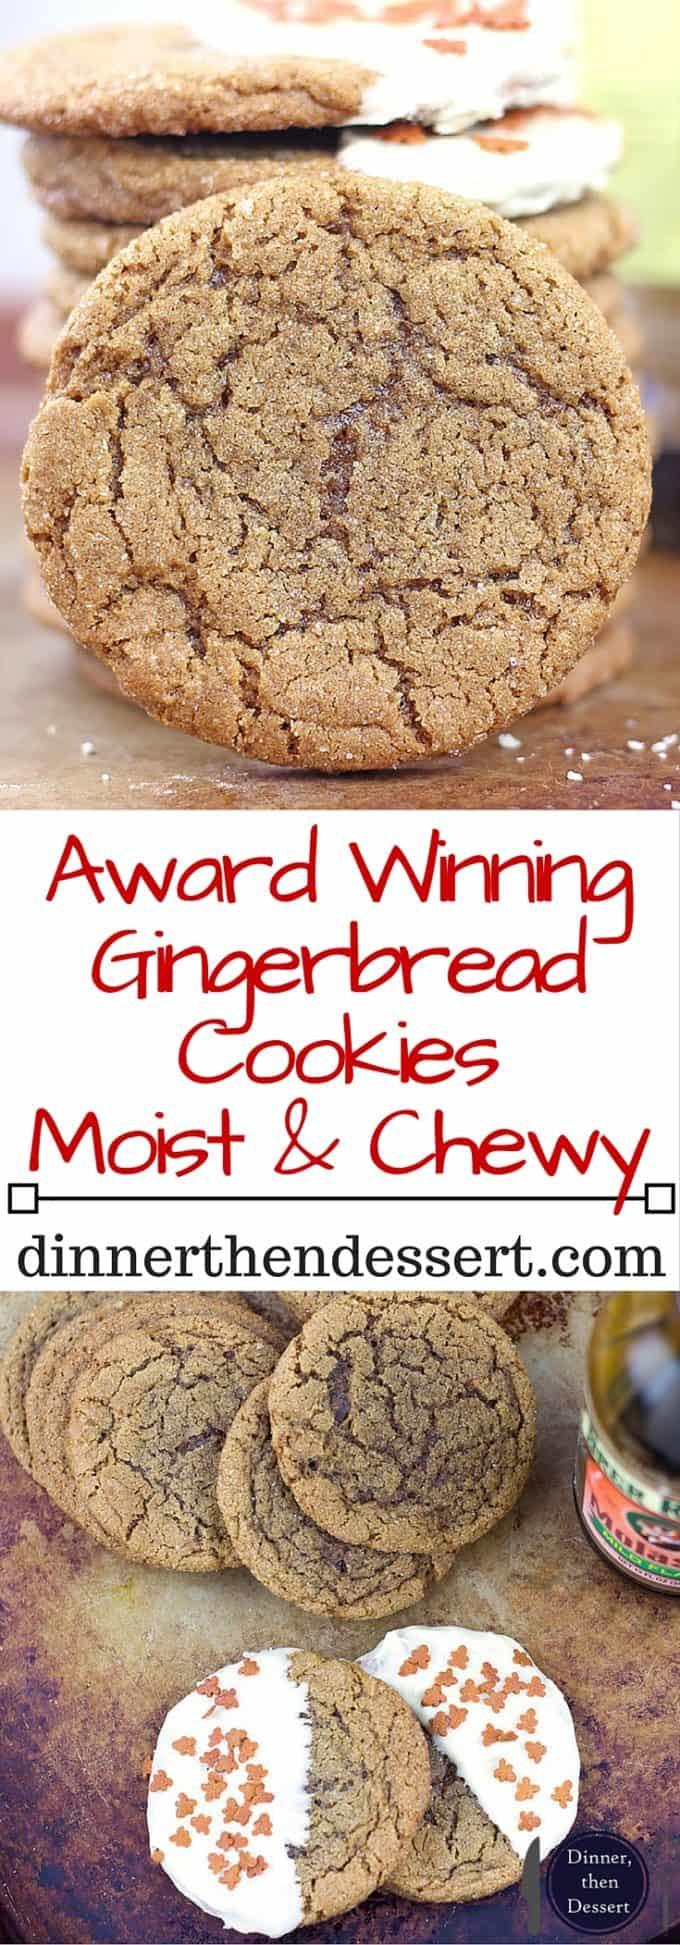 Award Winning Christmas Cookies
 Award Winning Gingerbread Cookies Recipe Dinner Then Dessert